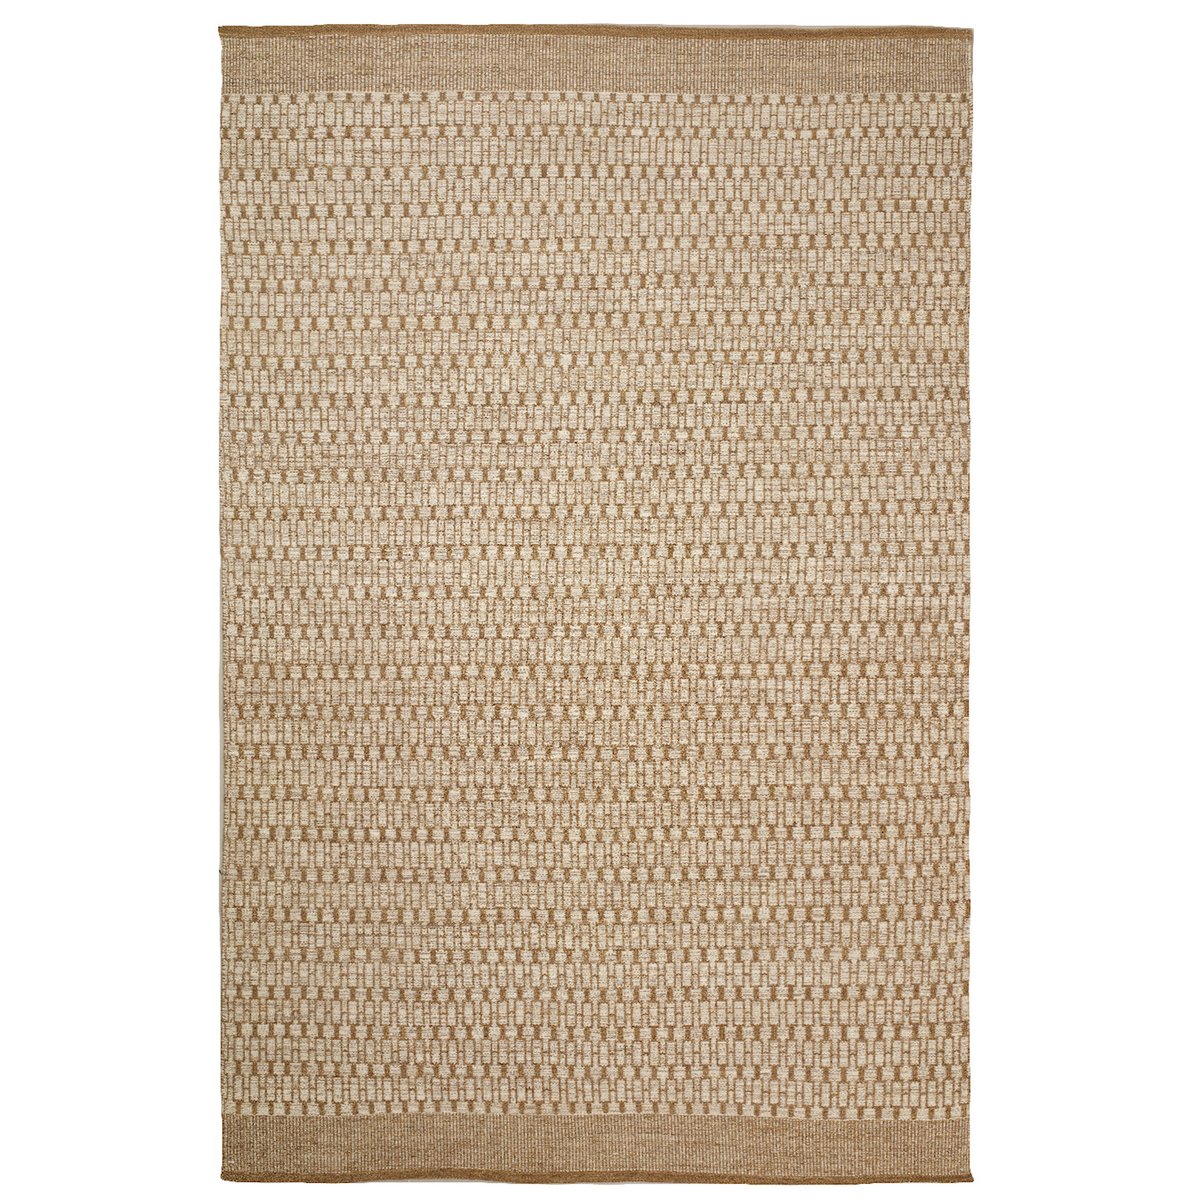 Chhatwal & Jonsson Mahi vloerkleed 170x240 cm Off white-beige